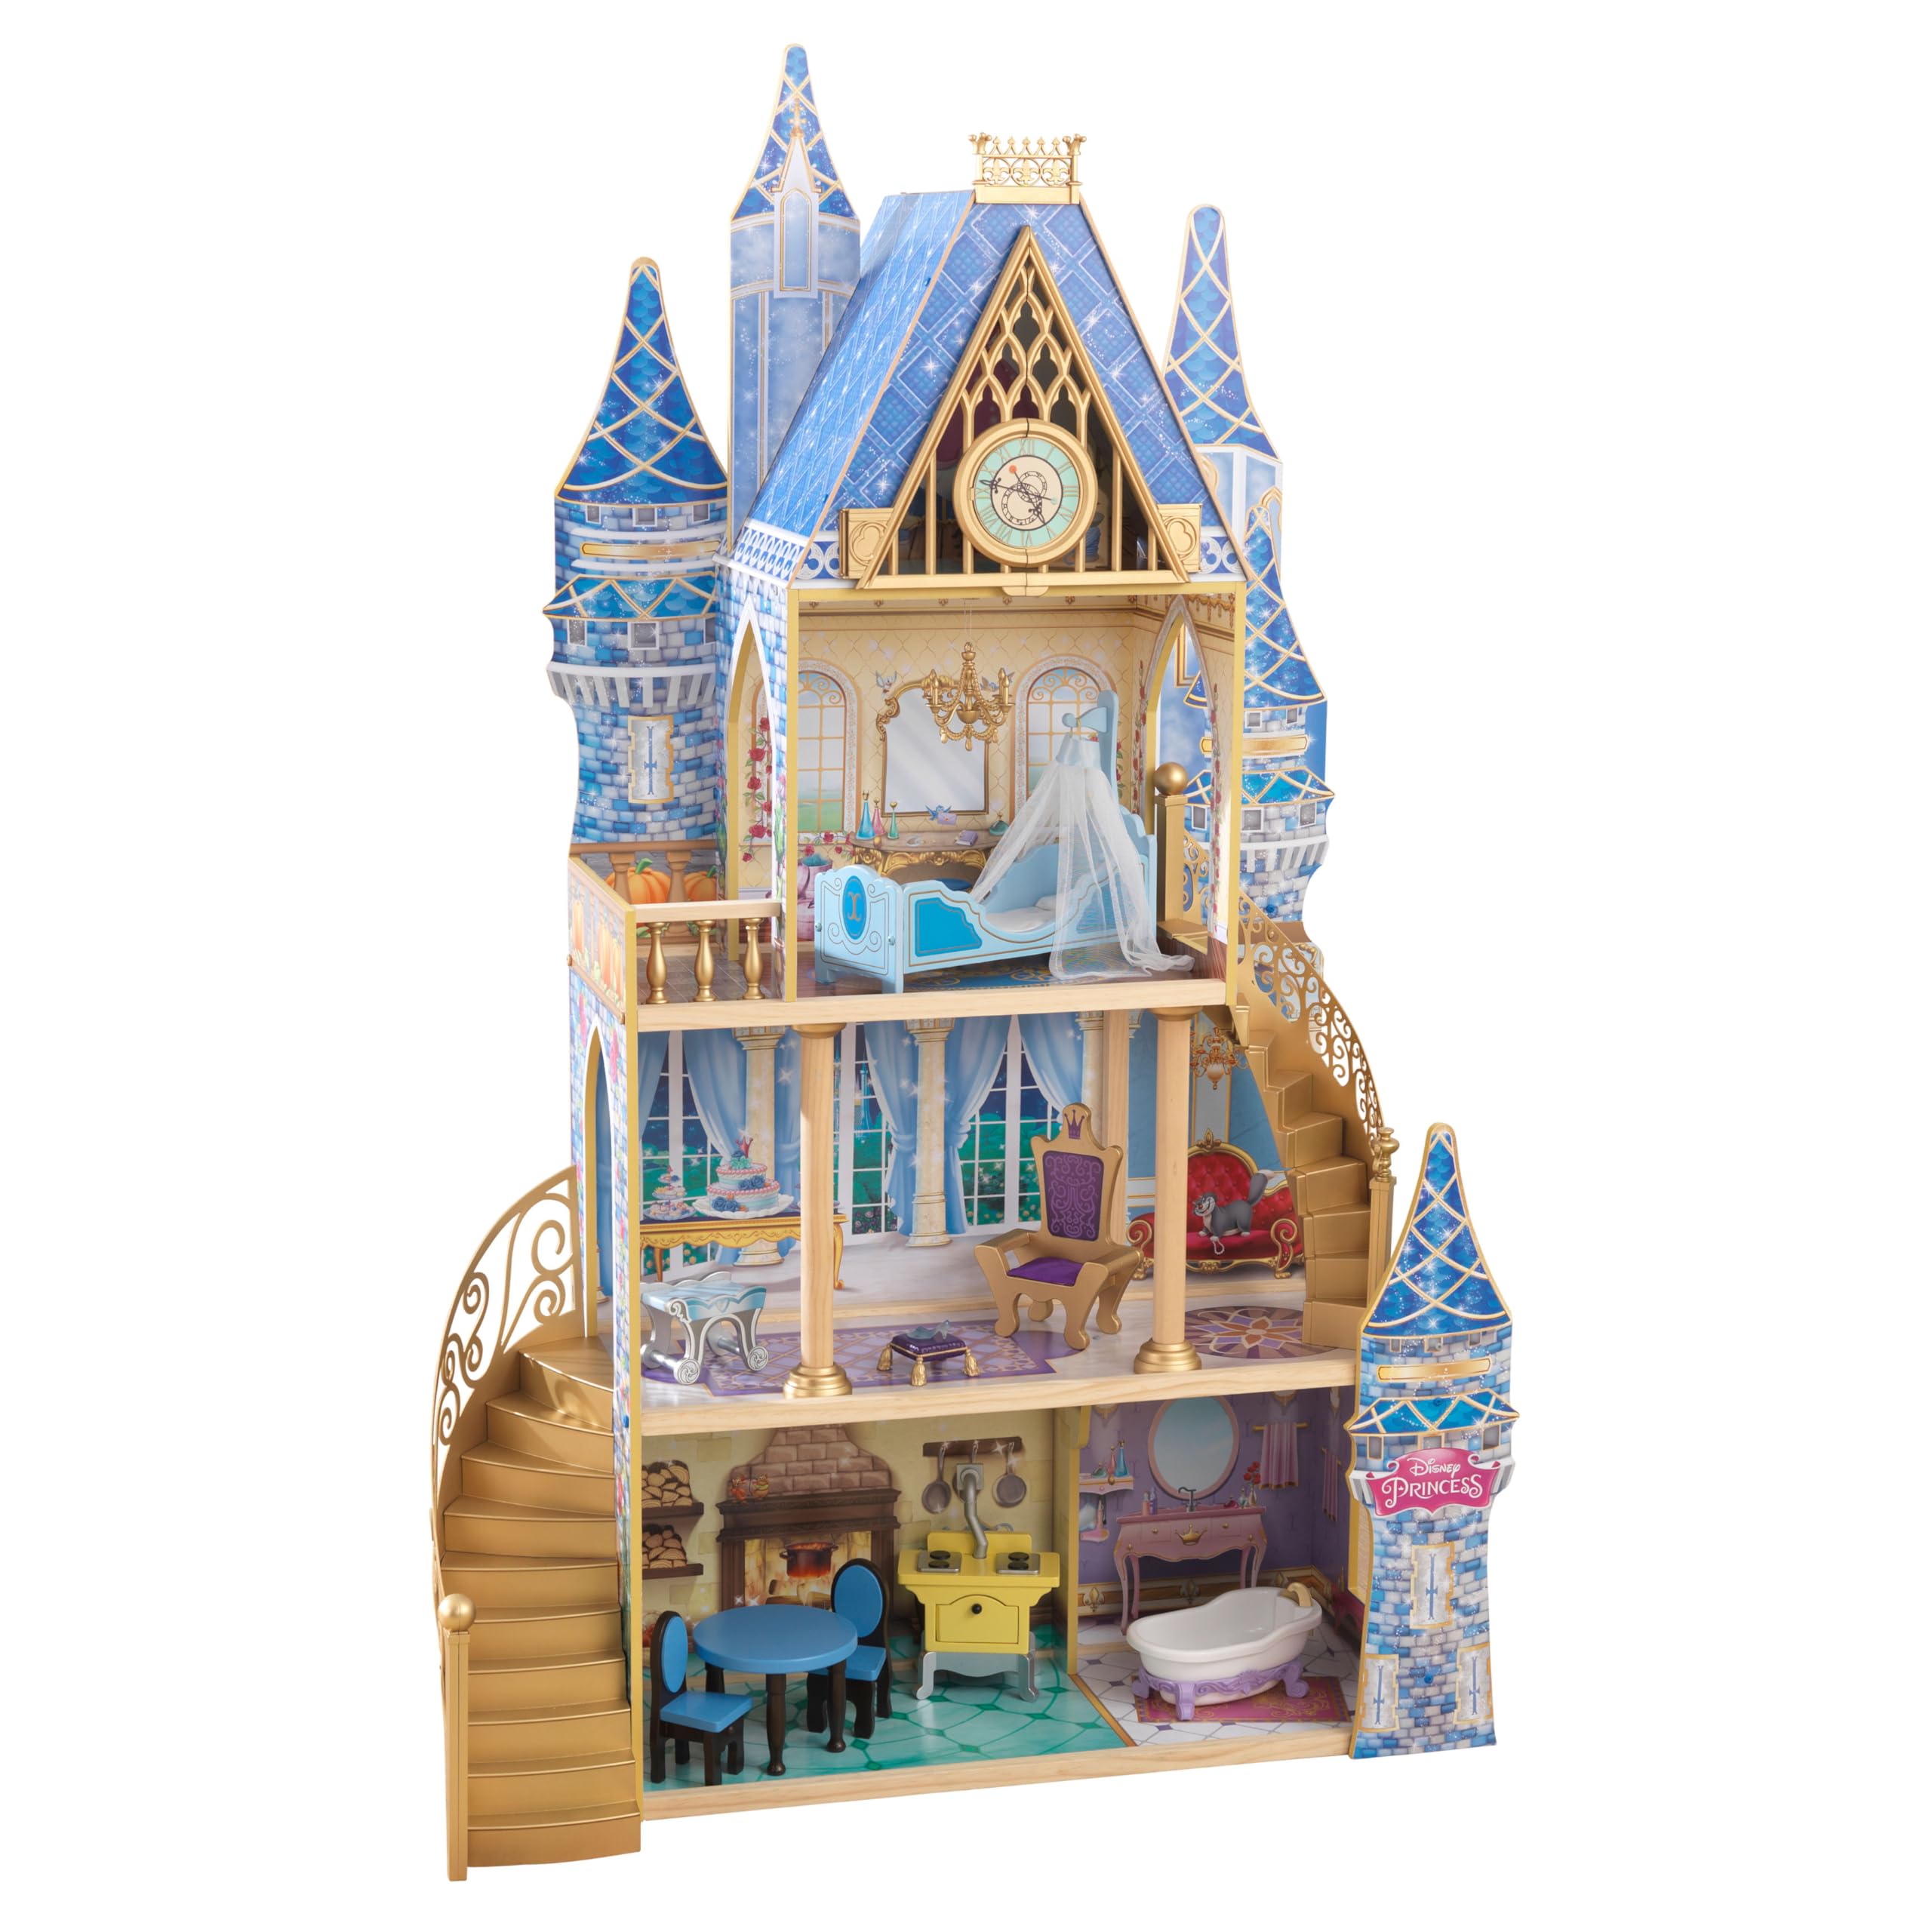 KidKraft 迪士尼公主灰姑娘皇家梦想木制城堡玩具屋，高 4 英尺以上，含 12 件，蓝色，适合 3 岁以上儿童的礼物